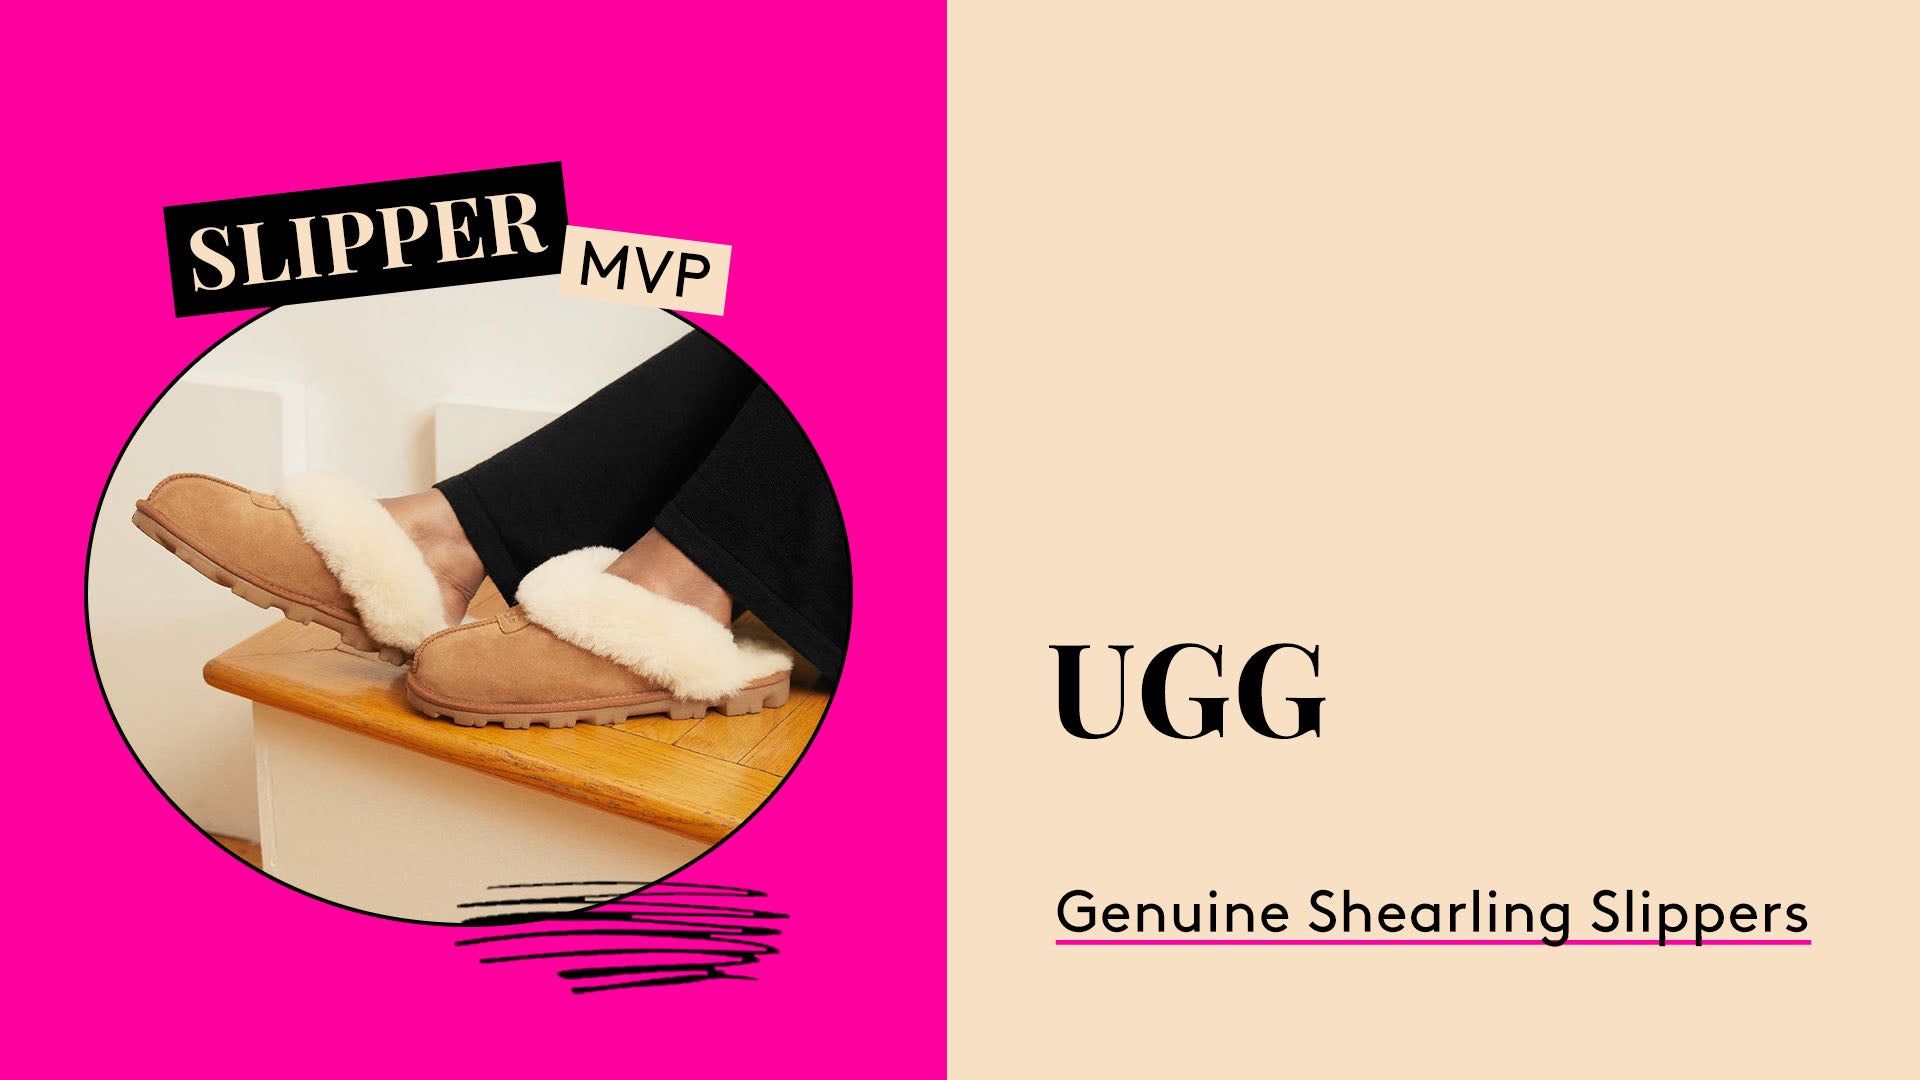 Slipper MVP. UGG Genuine Shearling Slippers.